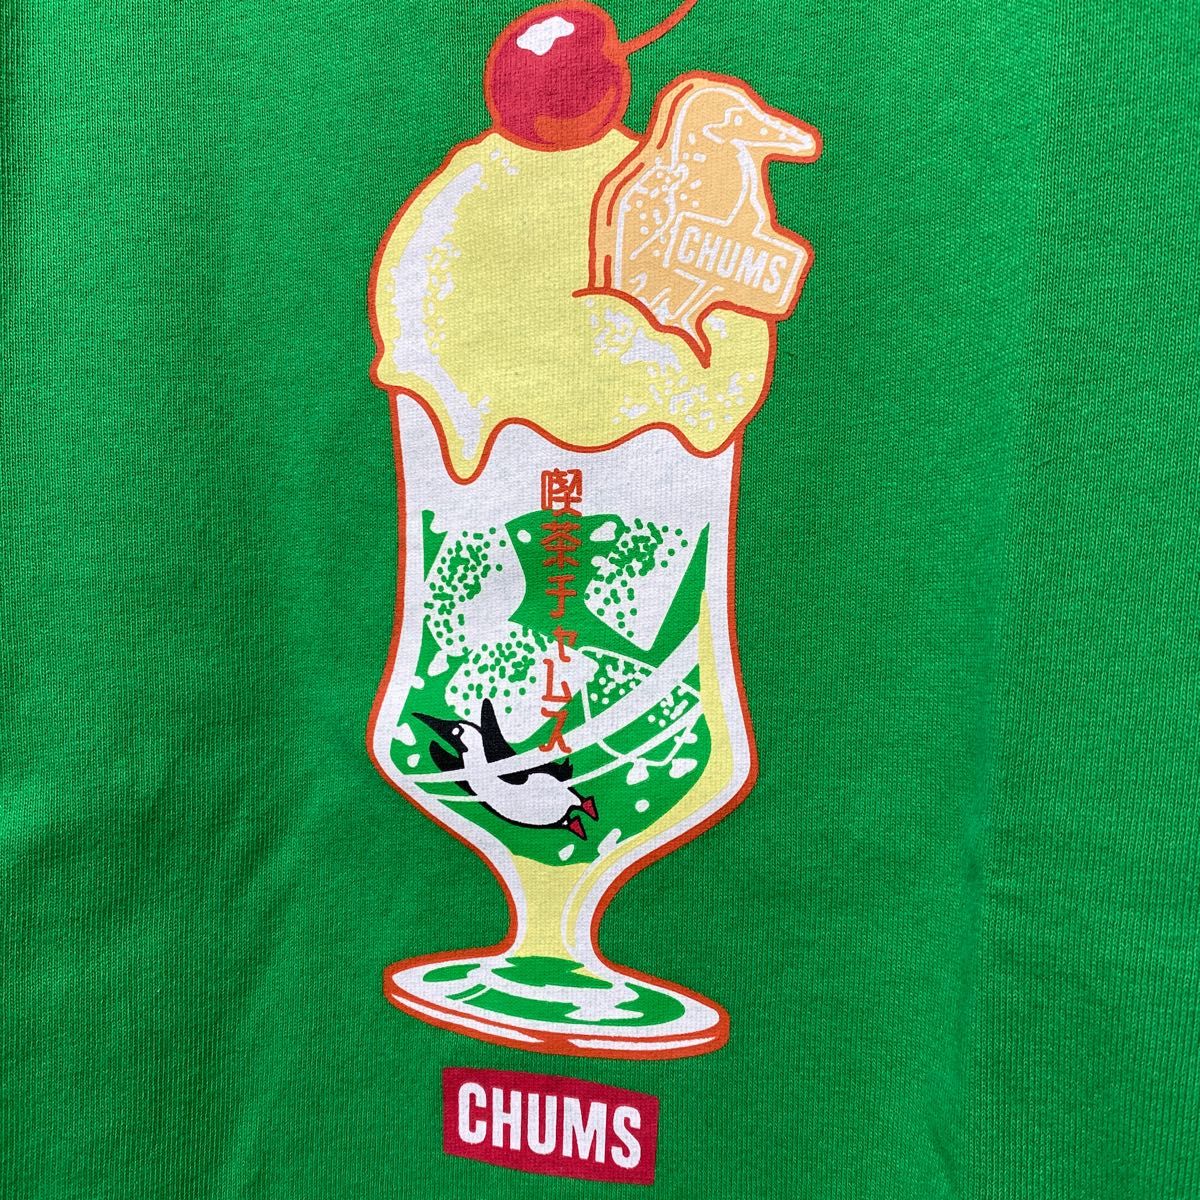 【CHUMS】メロンソーダを泳ぐブービーバードがカワイイTシャツ